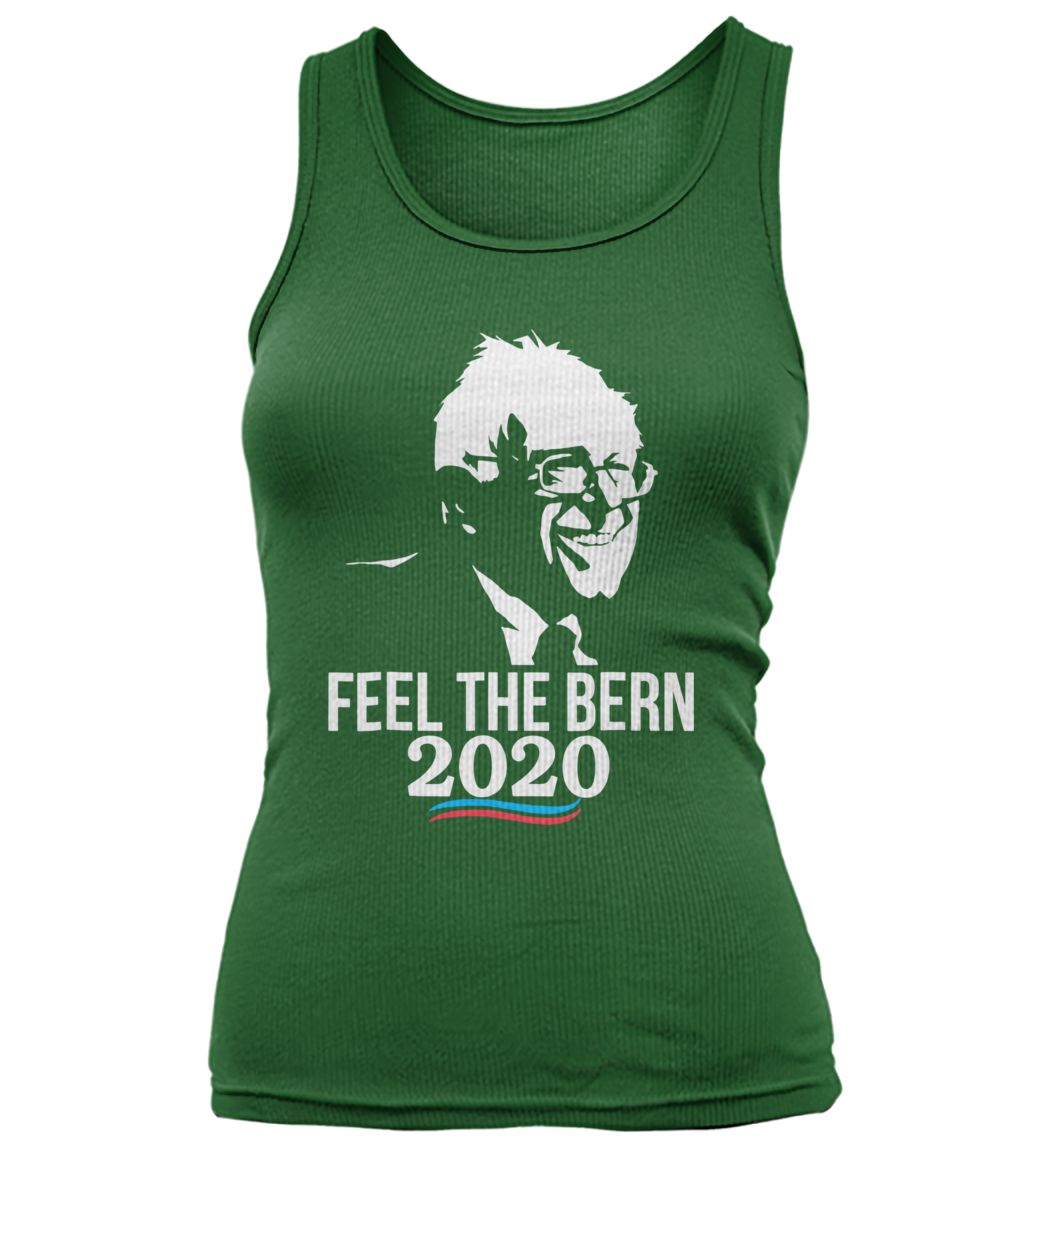 Feel the bern bernie sanders for president 2020 women's tank top